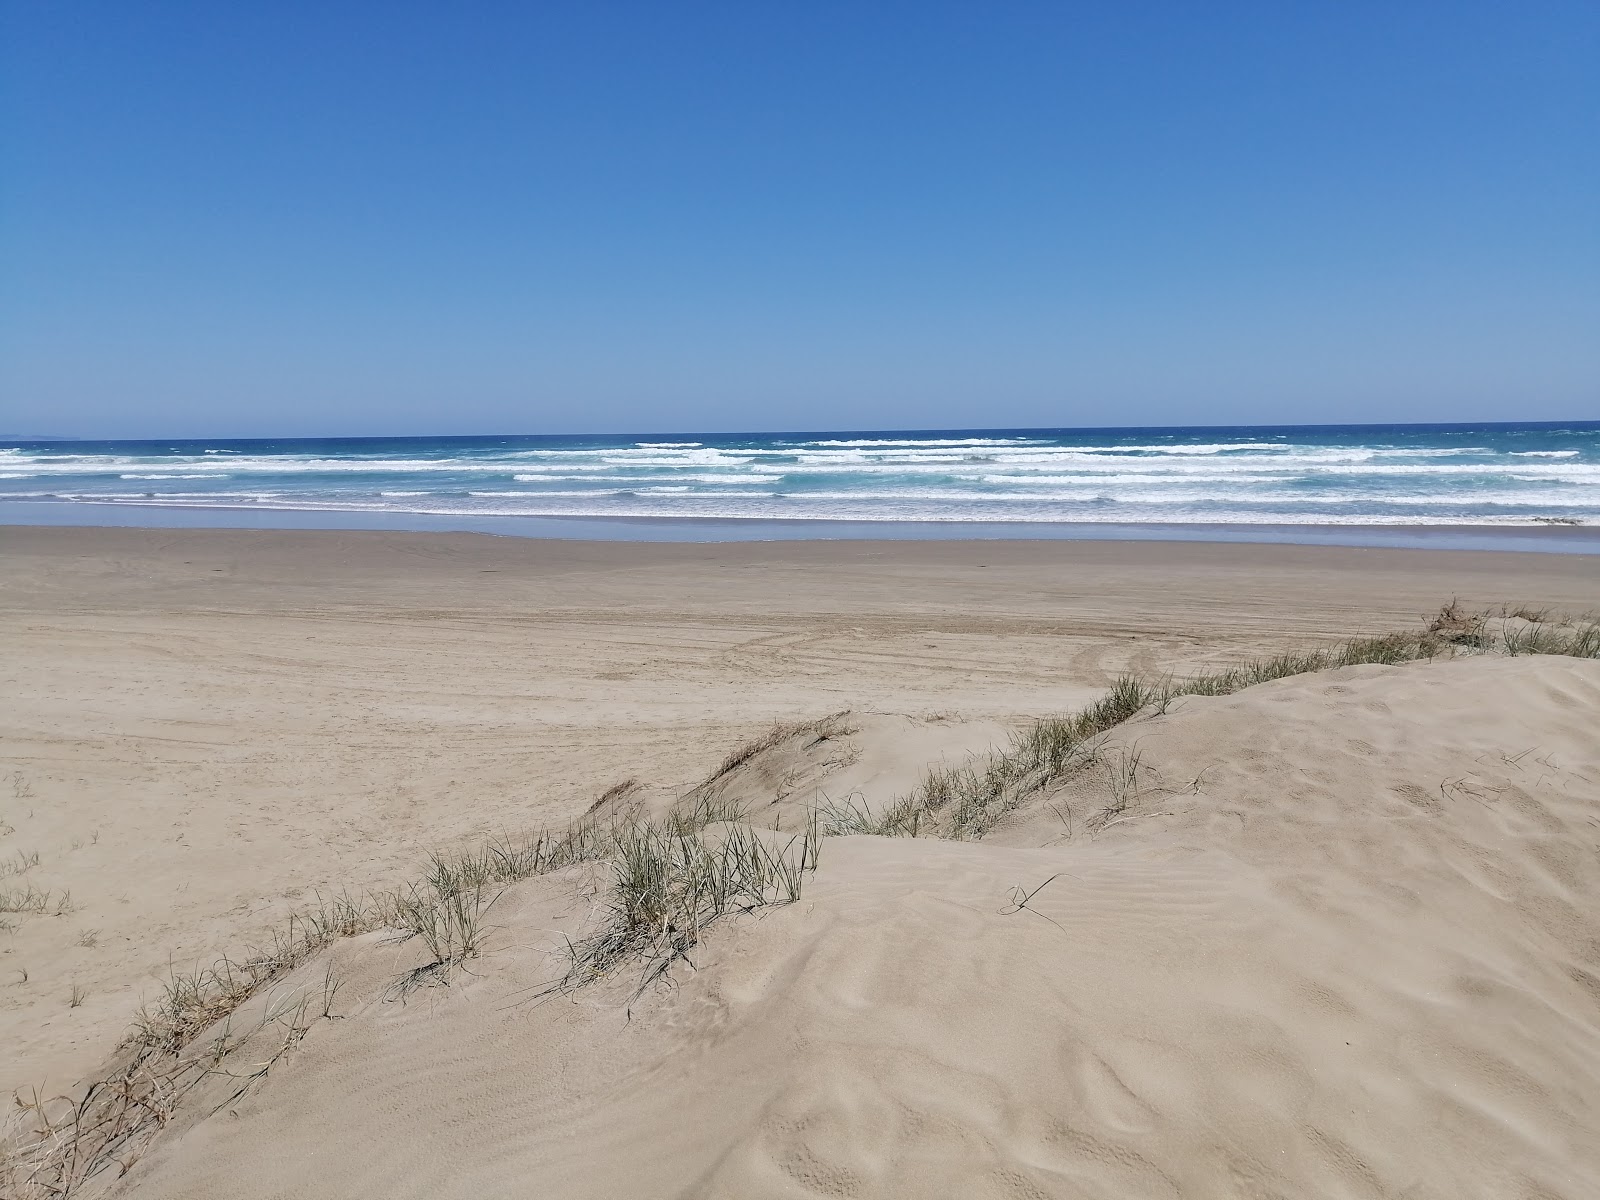 Fotografie cu 90 Mile Beach cu o suprafață de nisip fin strălucitor